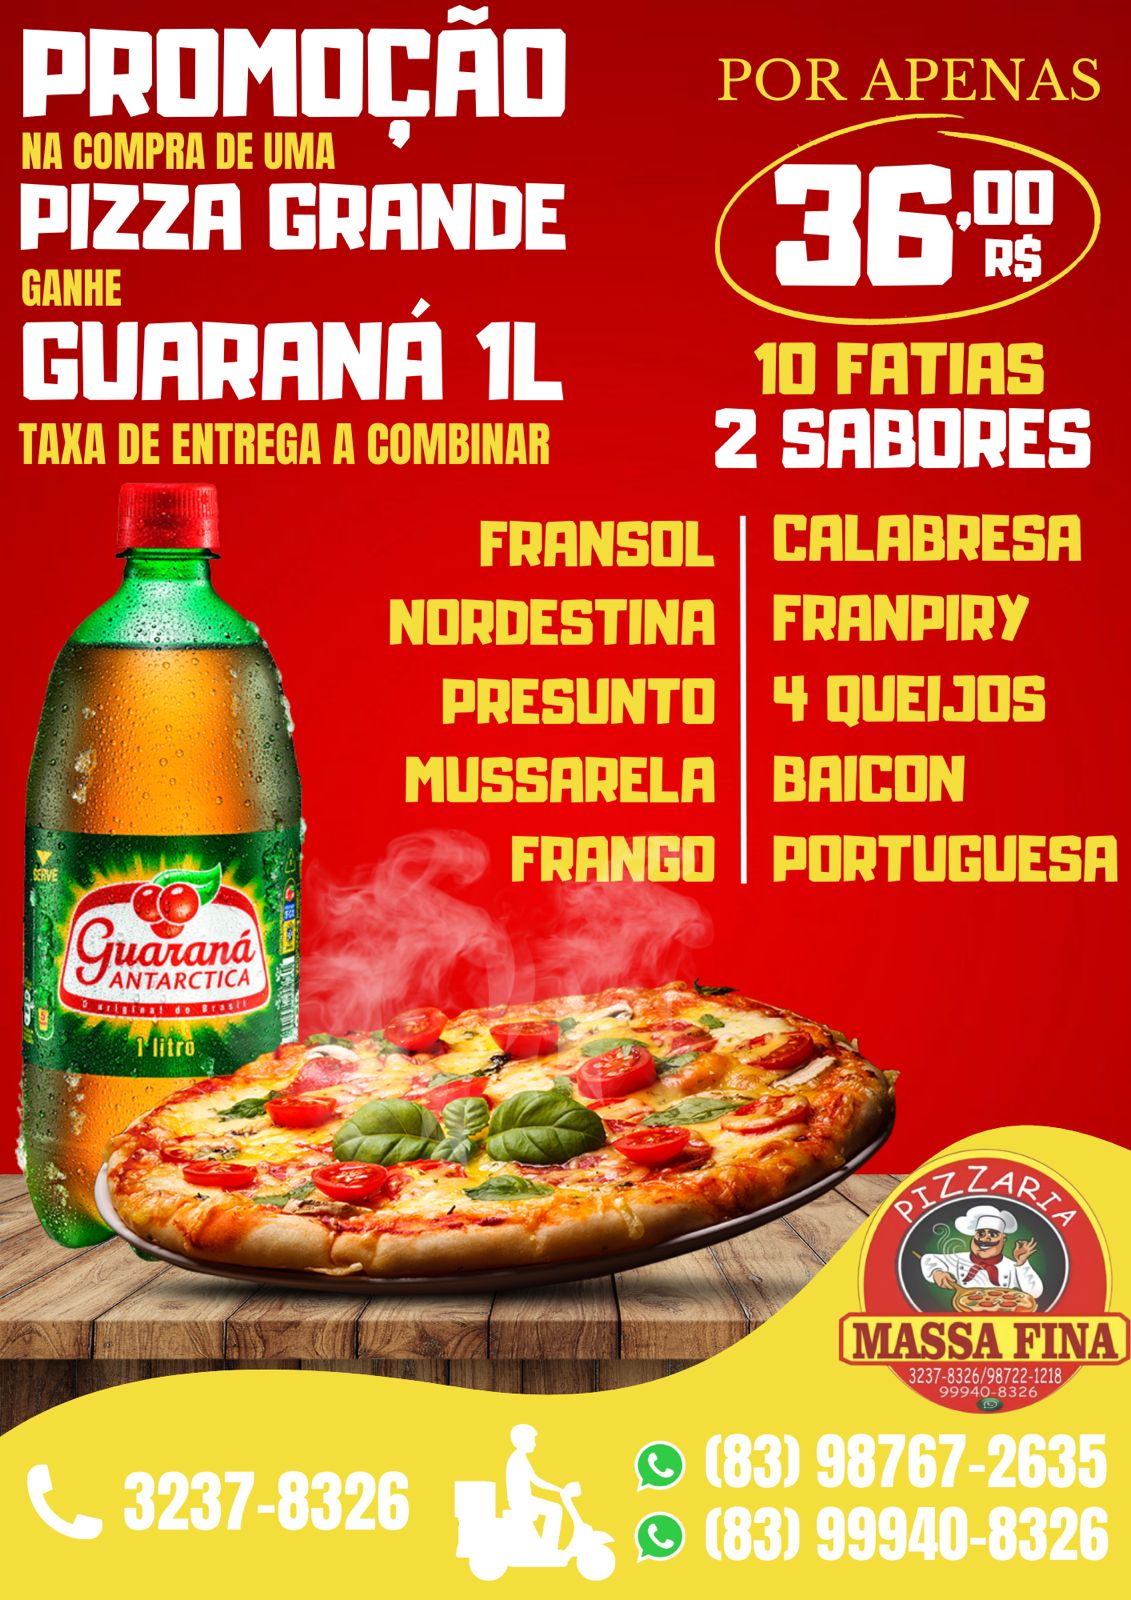 Promoção: Promoção Pizza Grande + Refrigerante